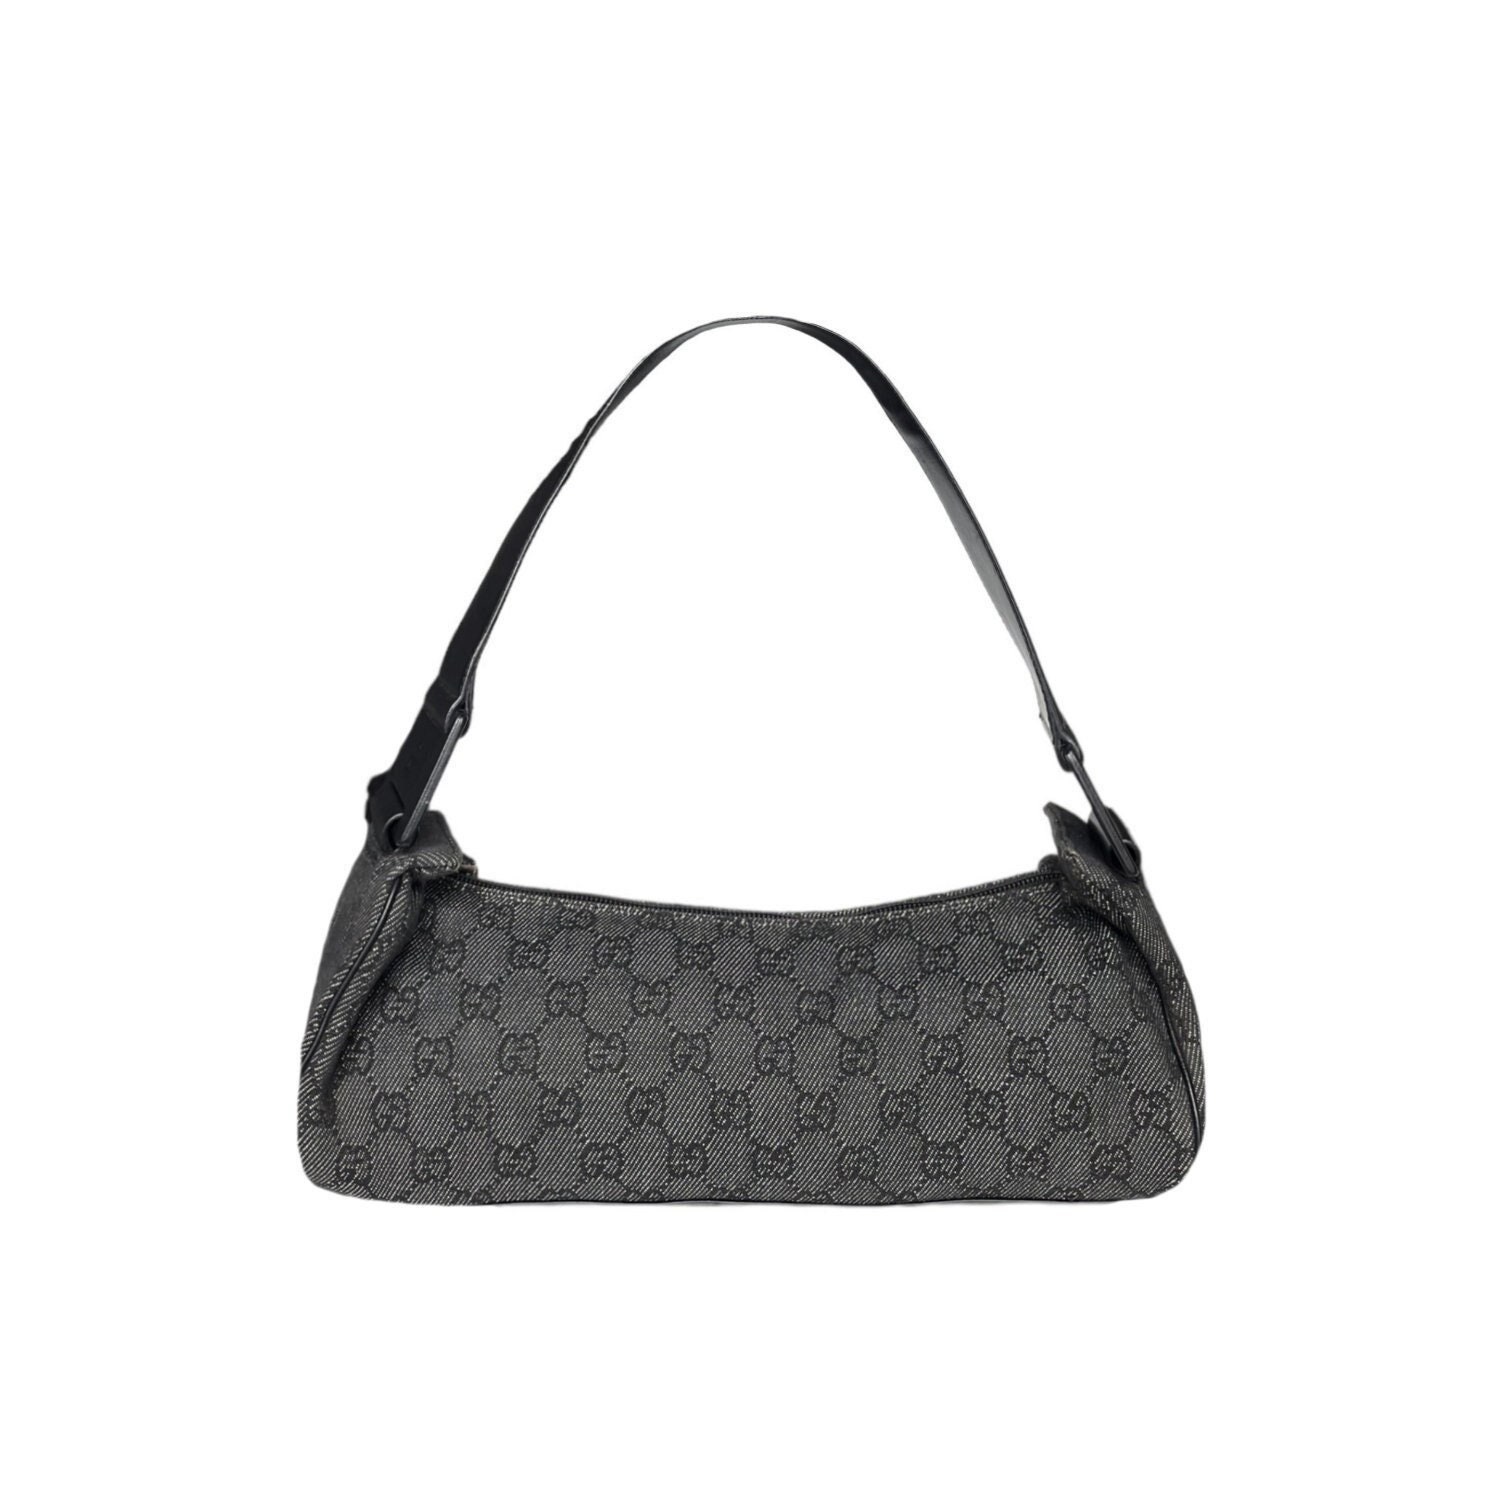 Gucci Bag - Authentic Gucci Monogram Shoulder Bag in Black / Grey Vintage 2000s Y2K 90s Minibag Long Baguette